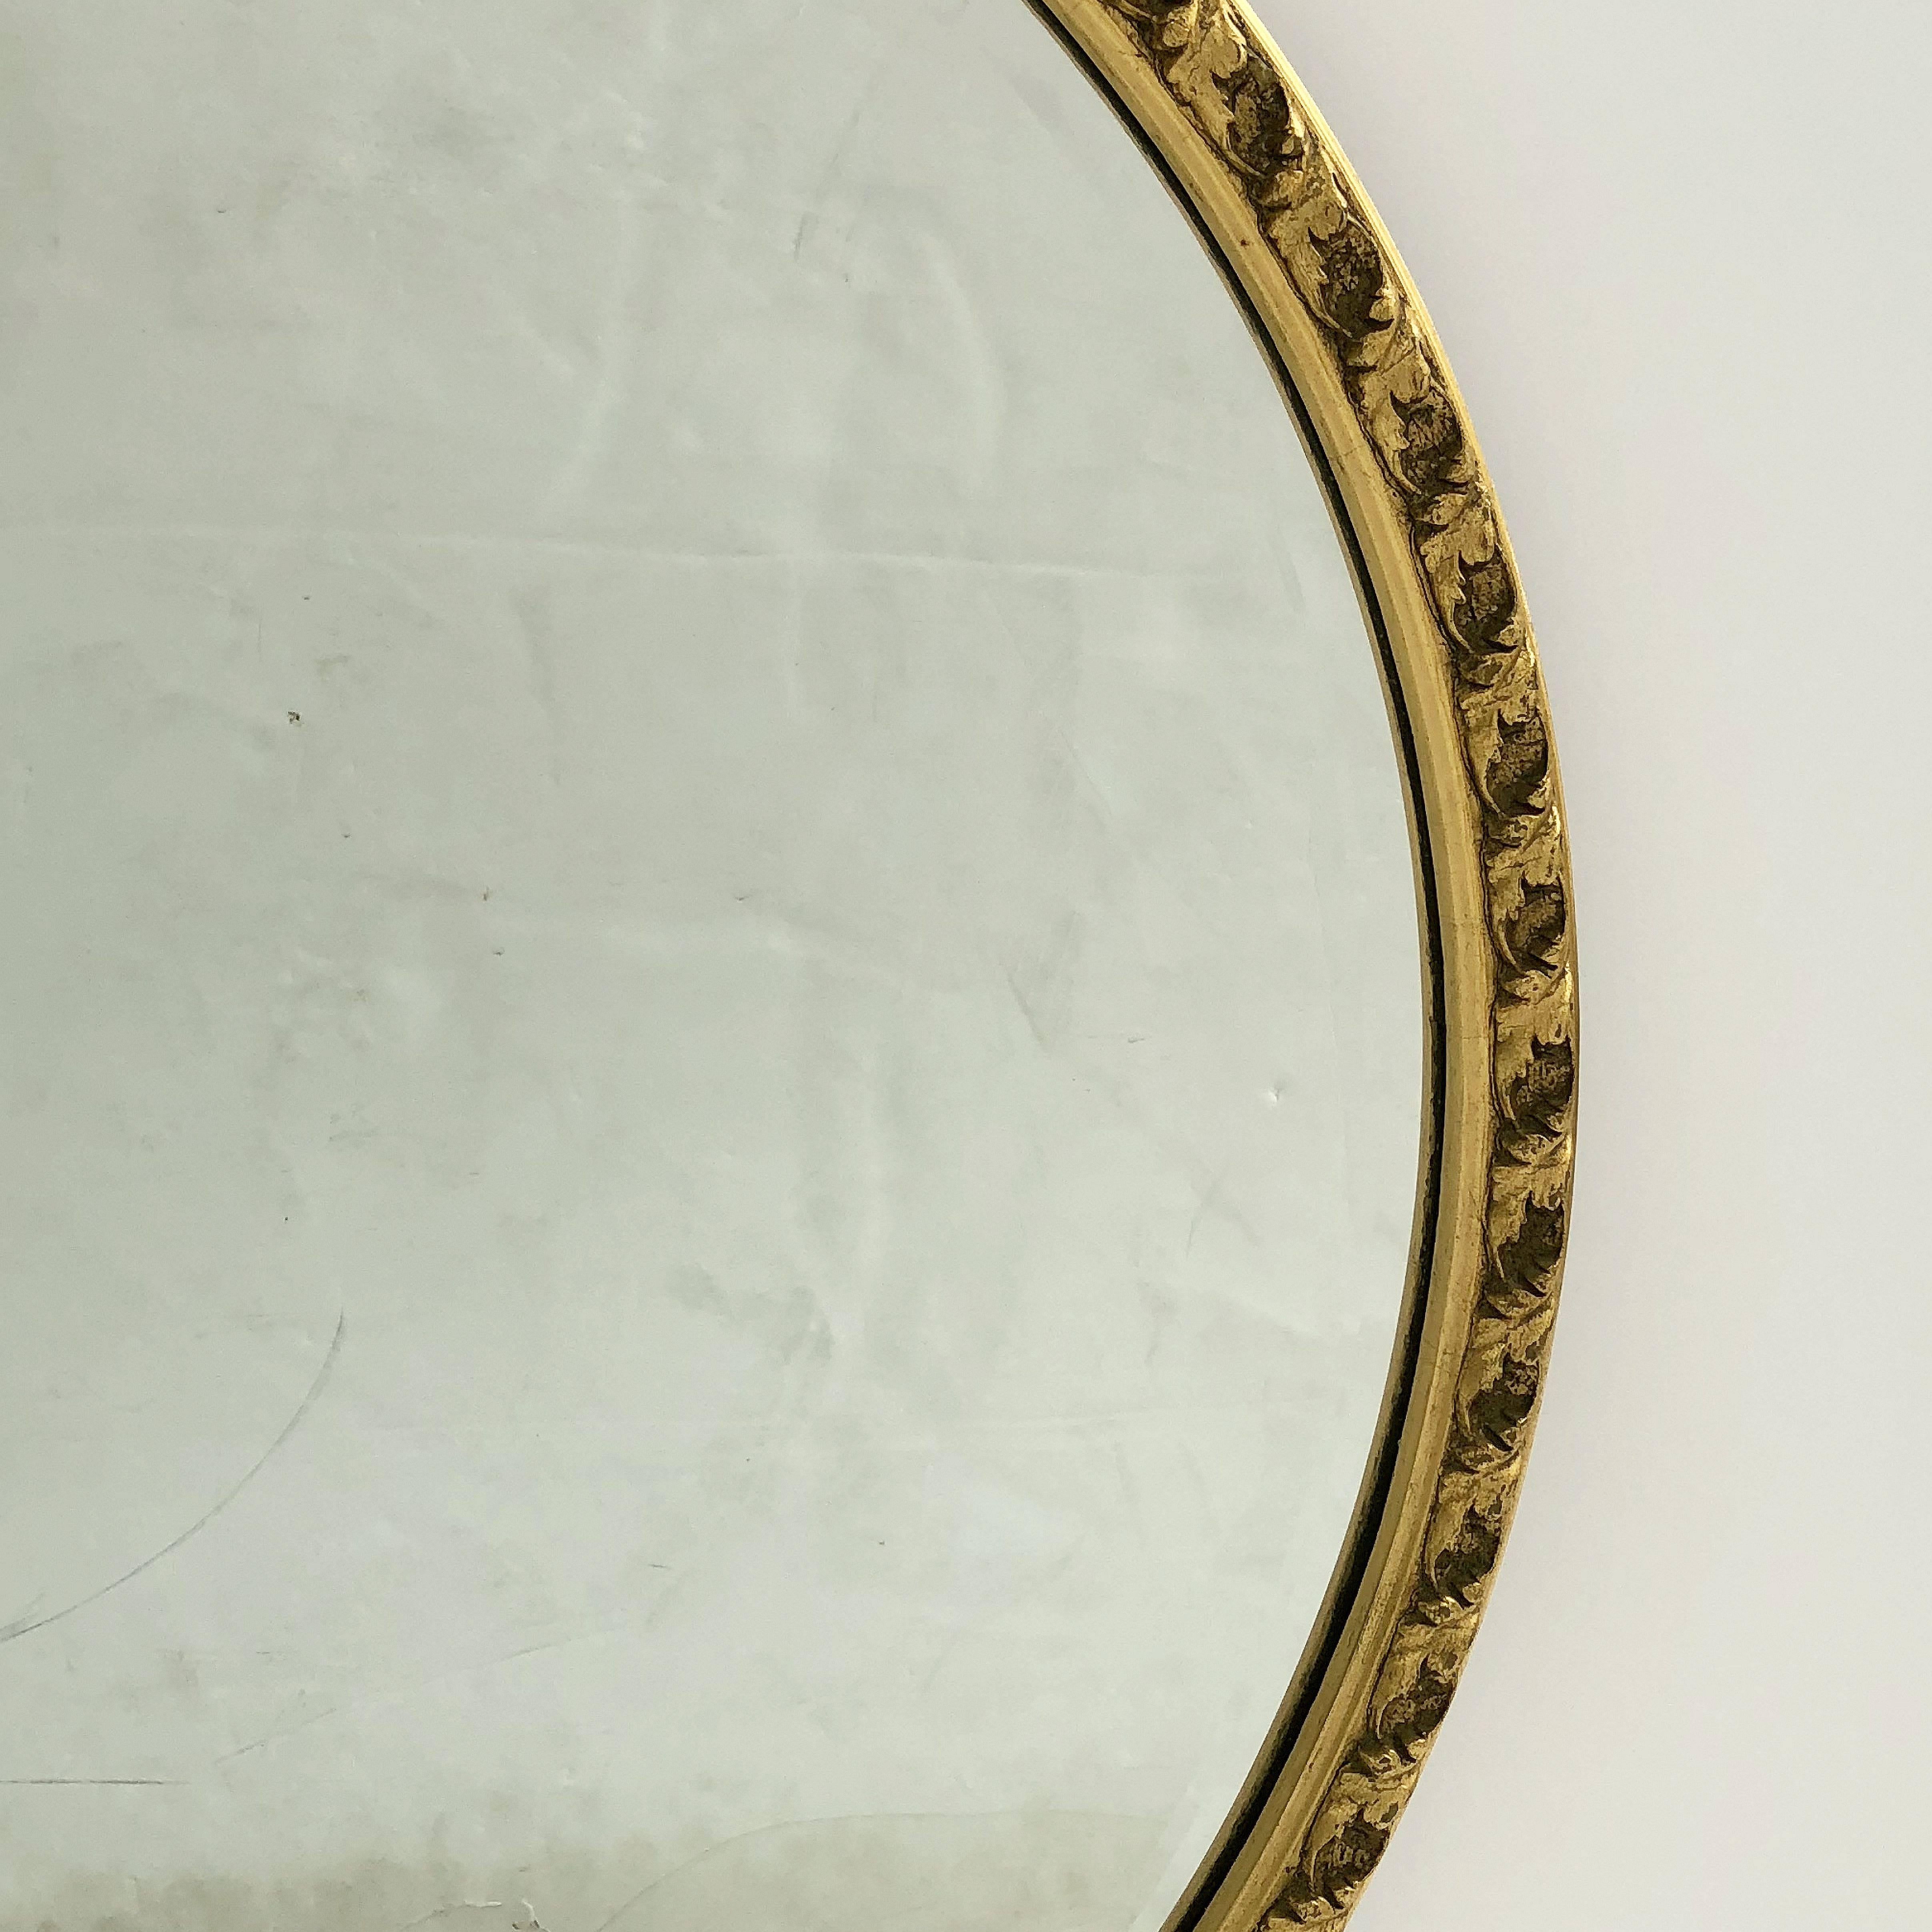 20th Century English Round Bevelled Mirror in Gilt Frame (Diameter 25 1/2)